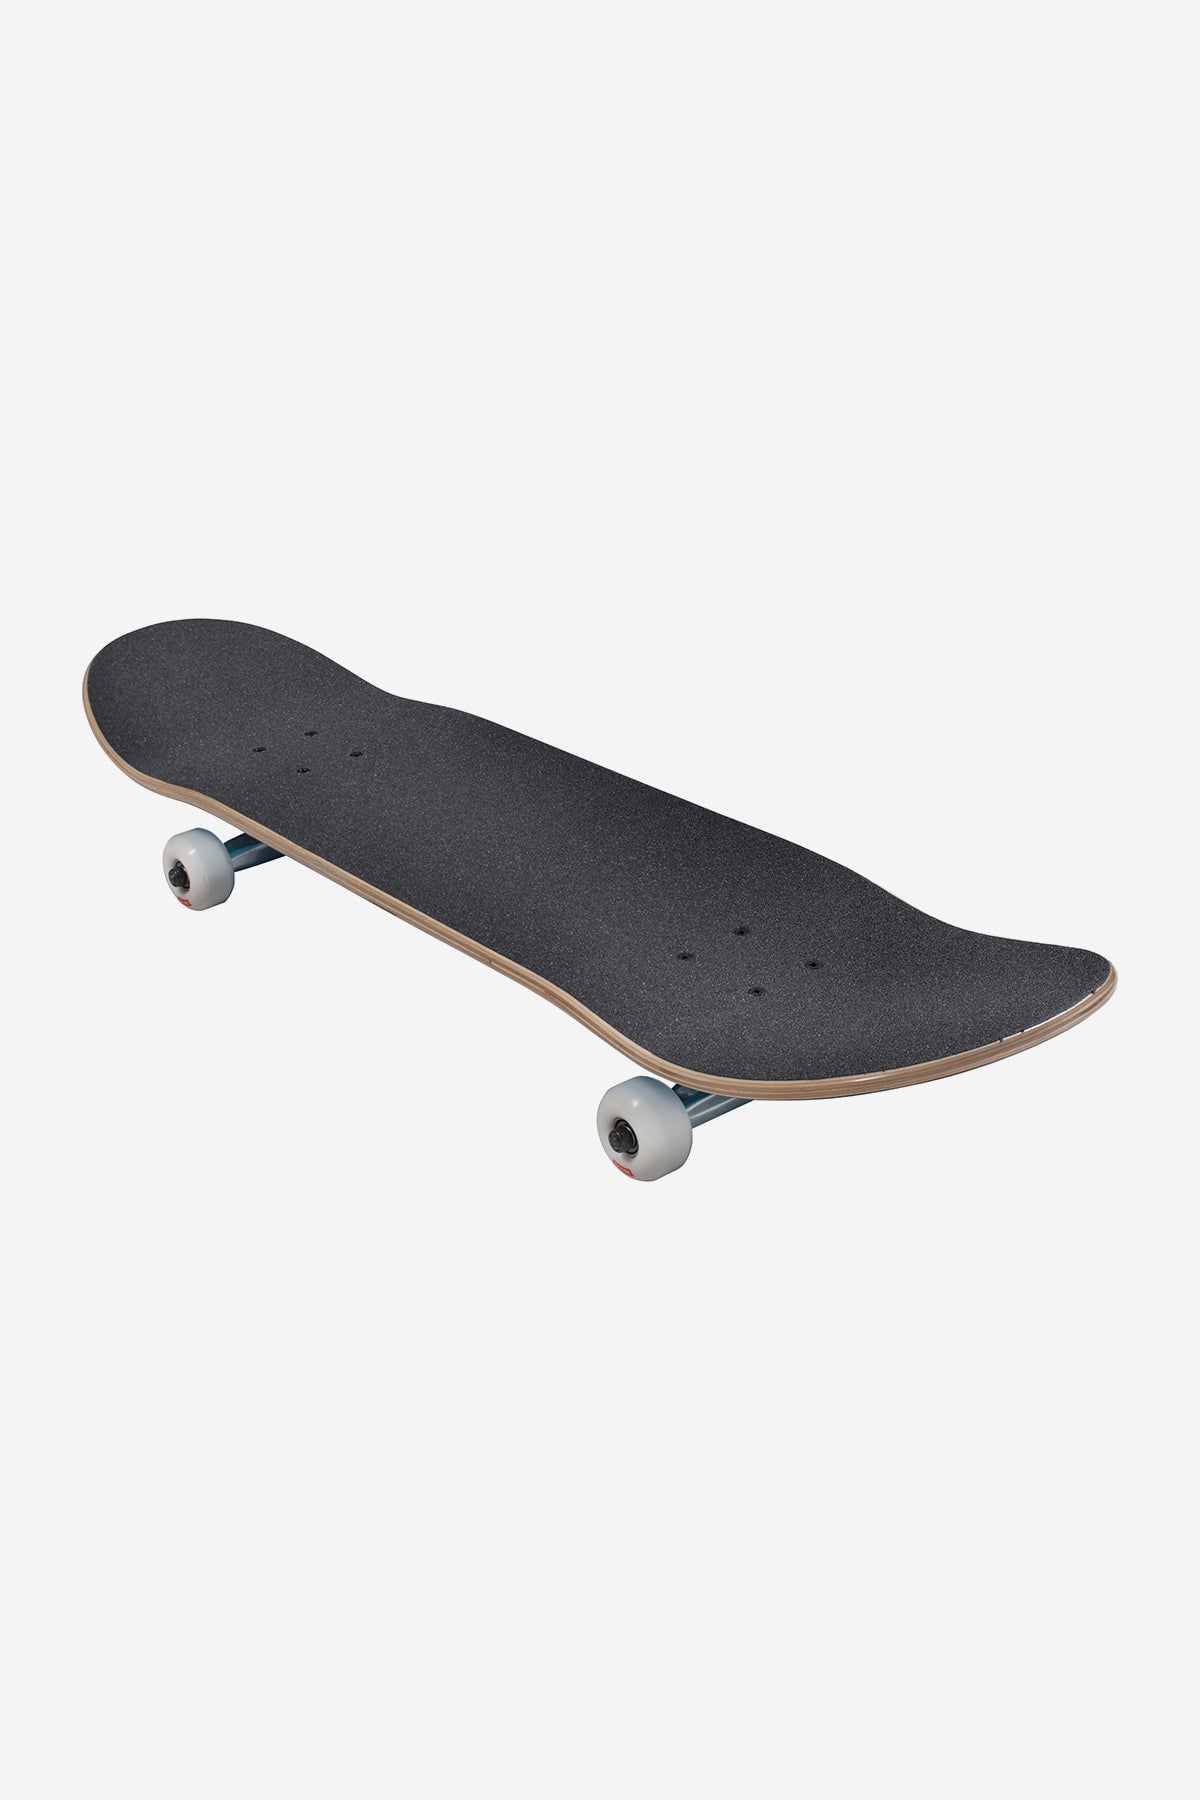 Globe - Goodstock - Clay - 8.5" Complete Skateboard